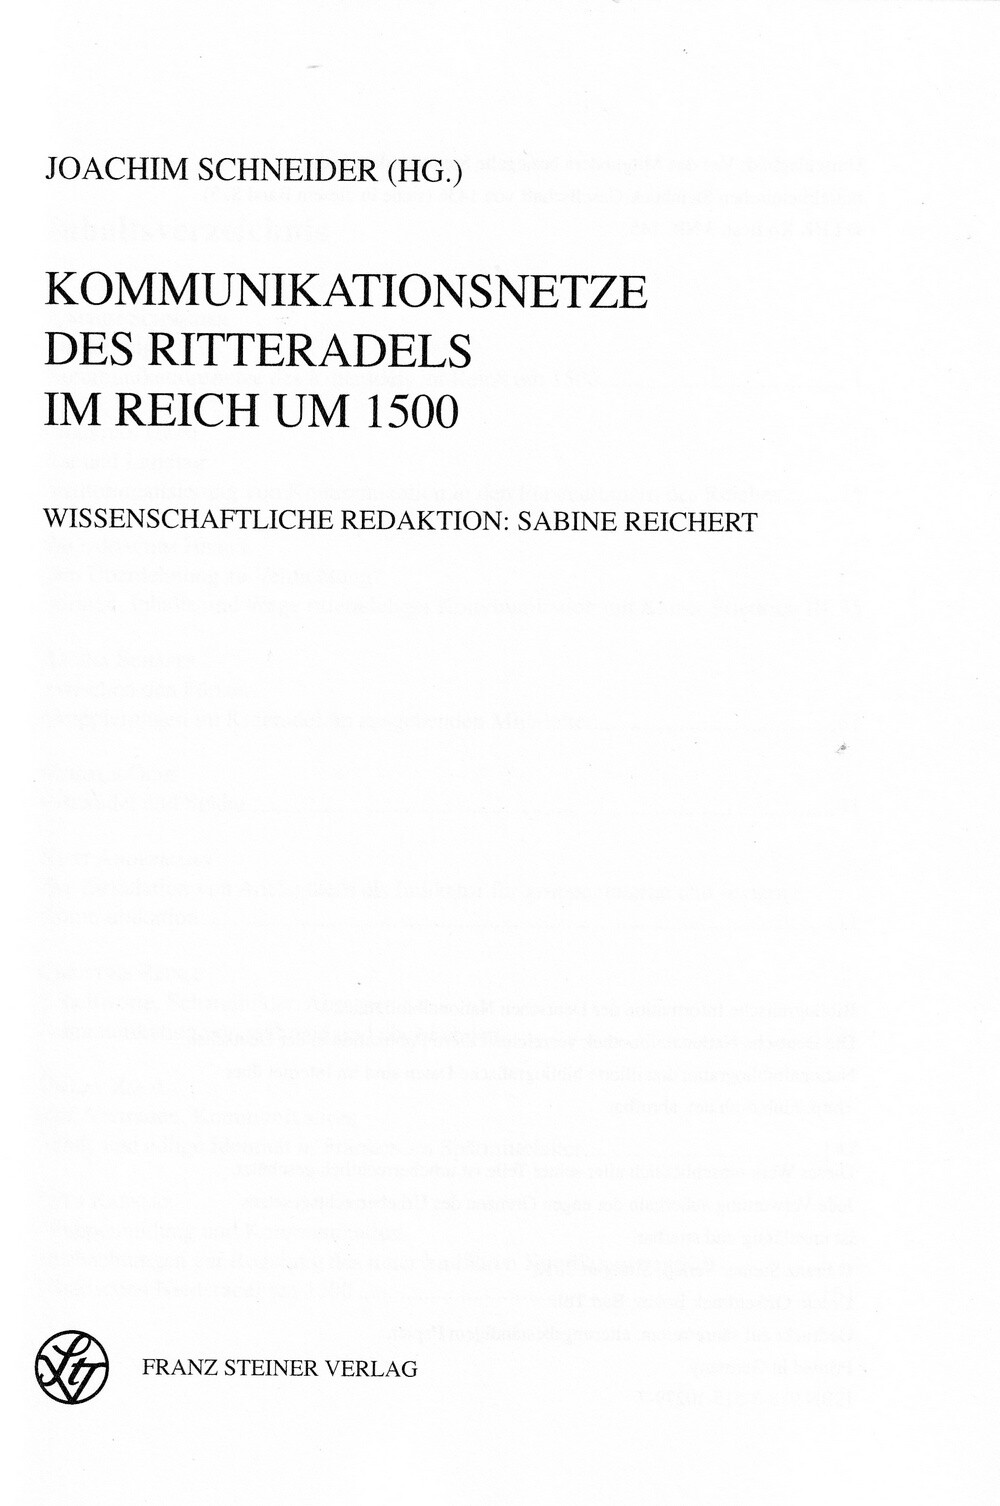 Kommunikationsnetze des Ritteradels im Reich um 1500 (Kulturverein Guntersblum CC BY-NC-SA)